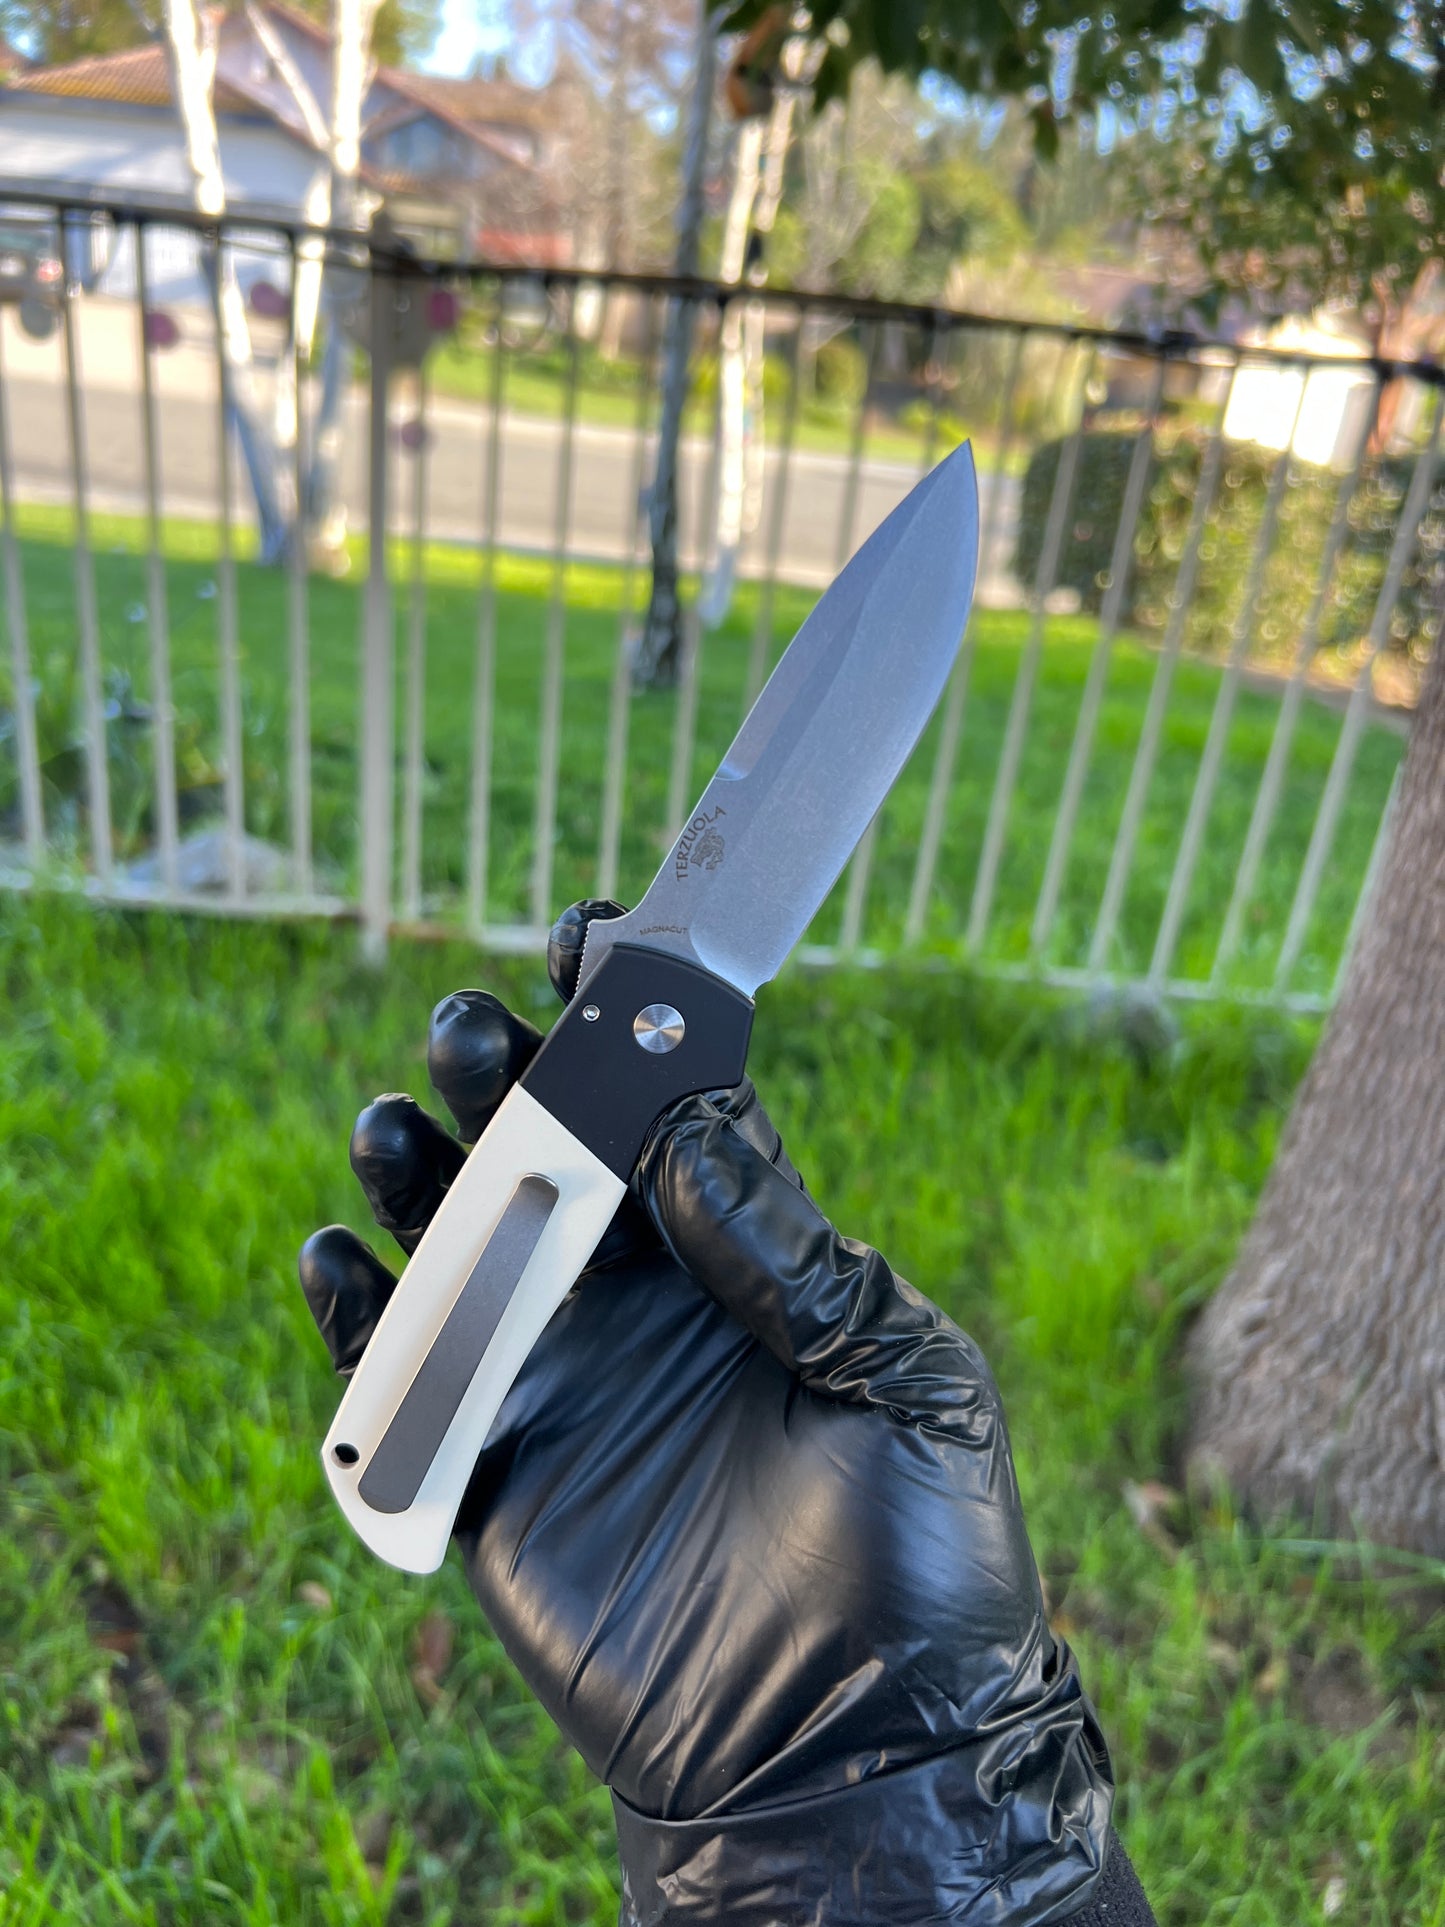 Pro-Tech Bob Terzuola ATCF Tuxedo AUTO Folding Knife 3.5" MagnaCut Black DLC Drop Point Blade, Black Aluminum Handles with Ivory Micarta Inlays - BT2752